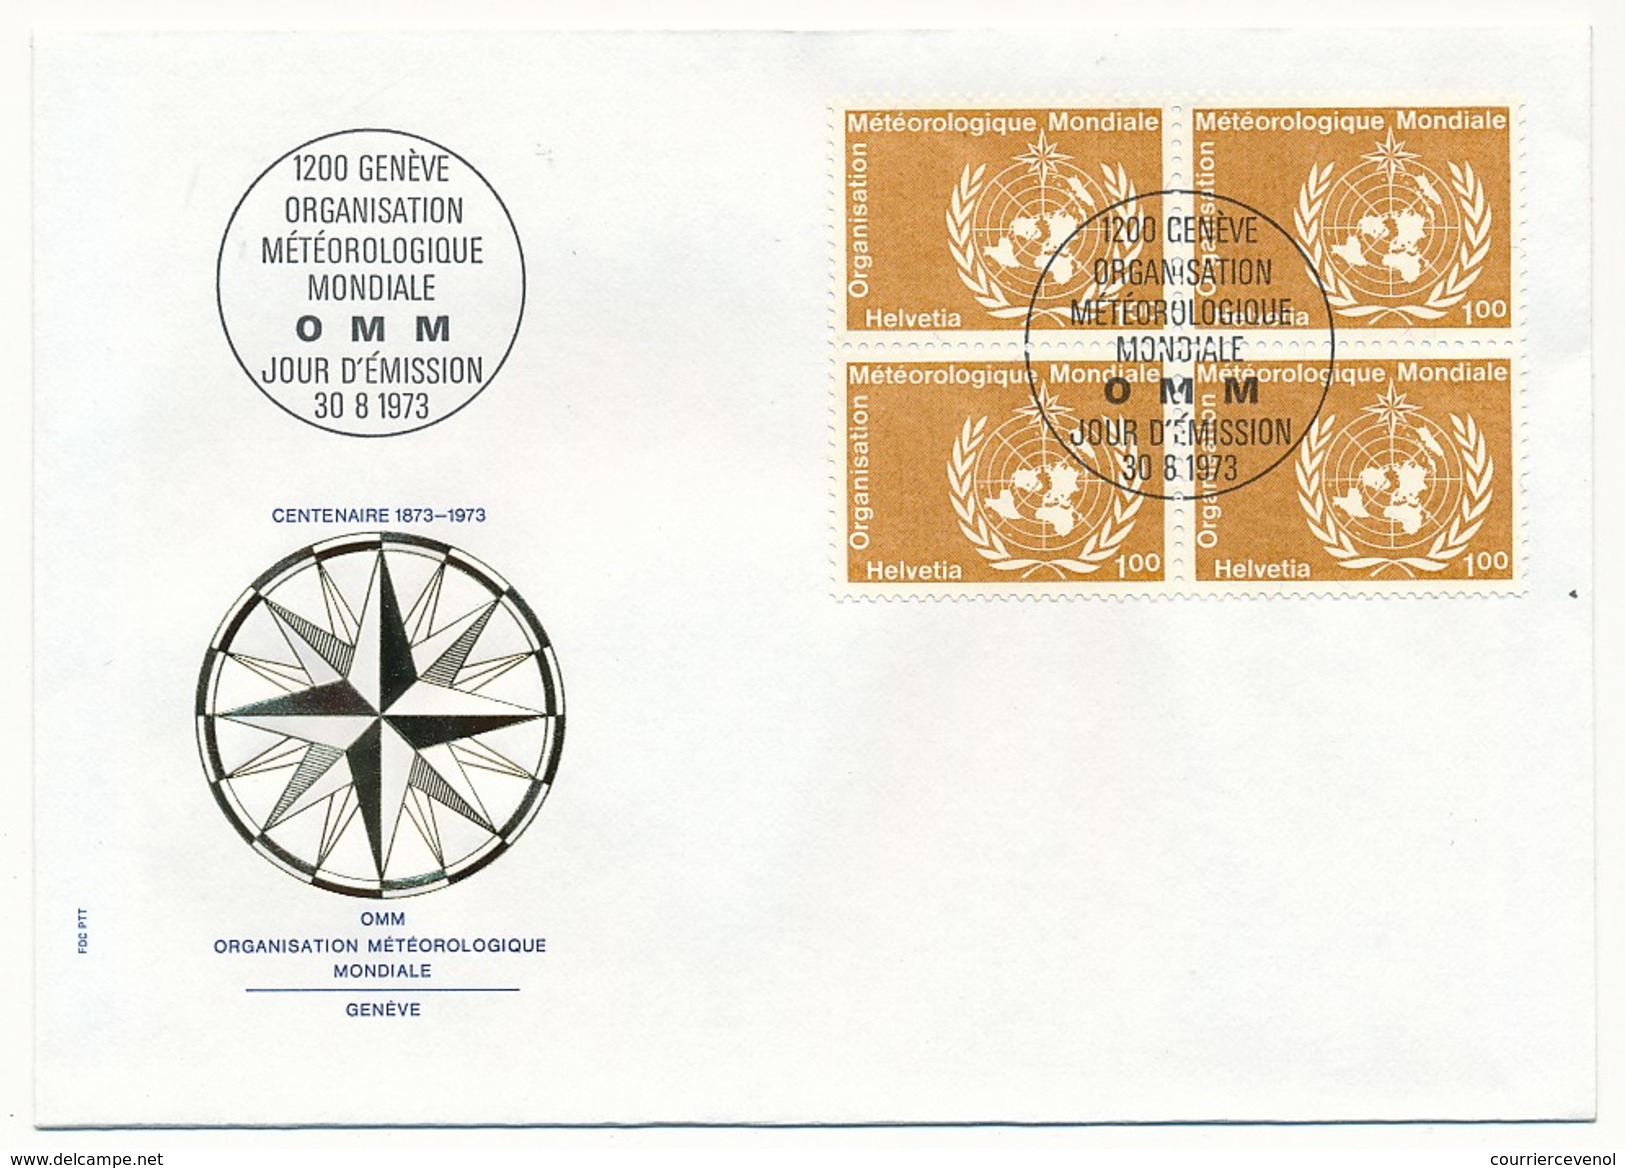 SUISSE - 8 Enveloppes FDC - Organisation météorologique mondiale 1973 (Timbres de service)